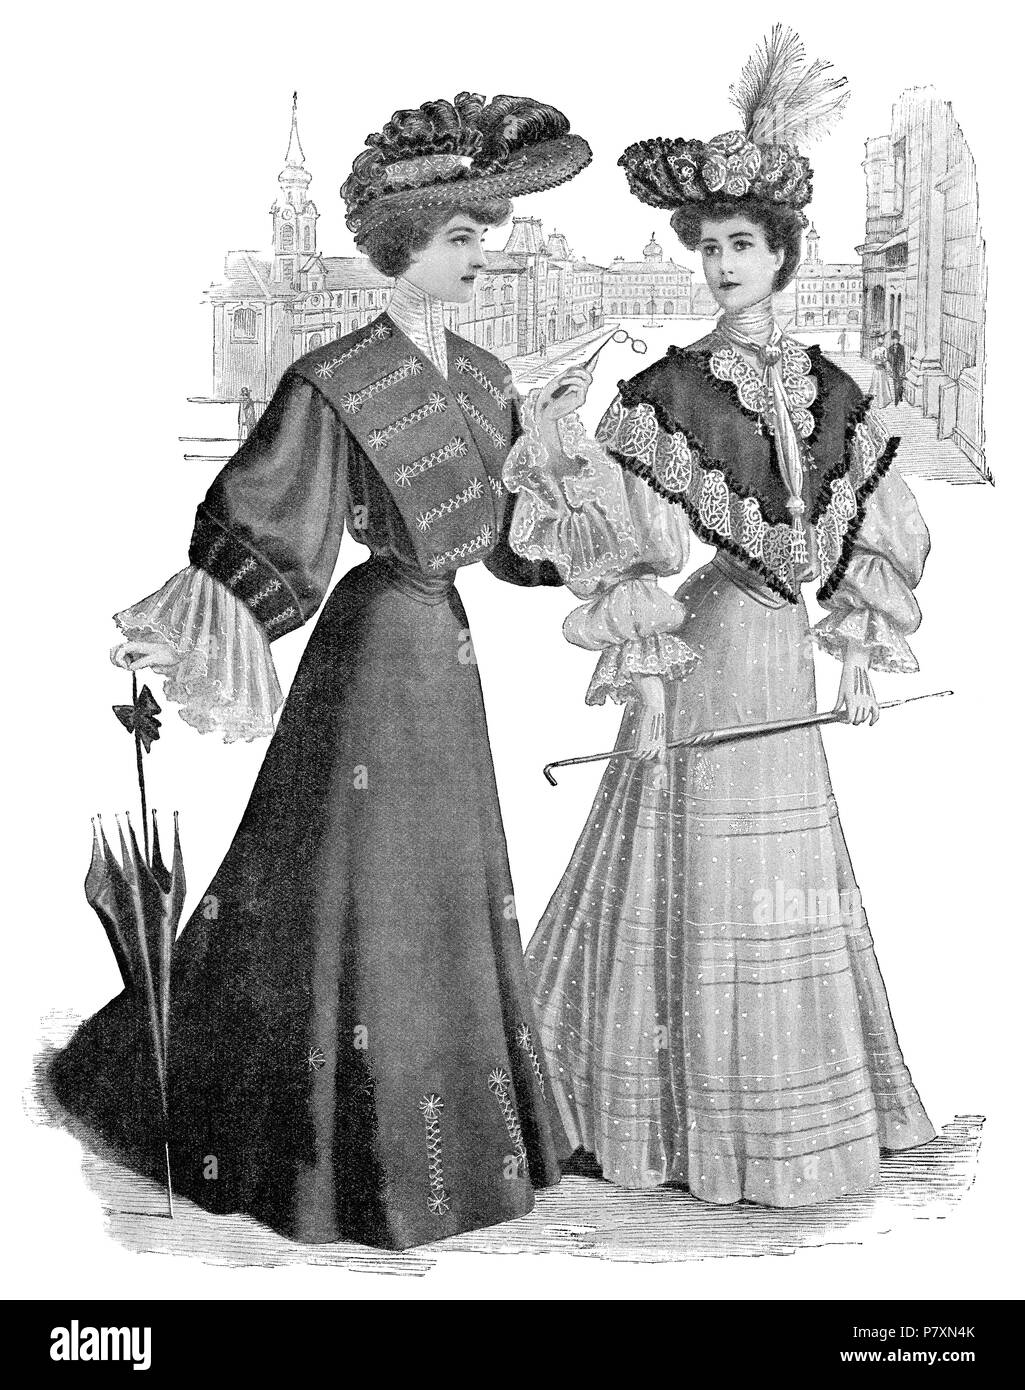 1904 vintage fashion illustration de deux dames en robes de style édouardien de jour. À partir de la Girl's Own Paper, 30 juillet 1904. Banque D'Images